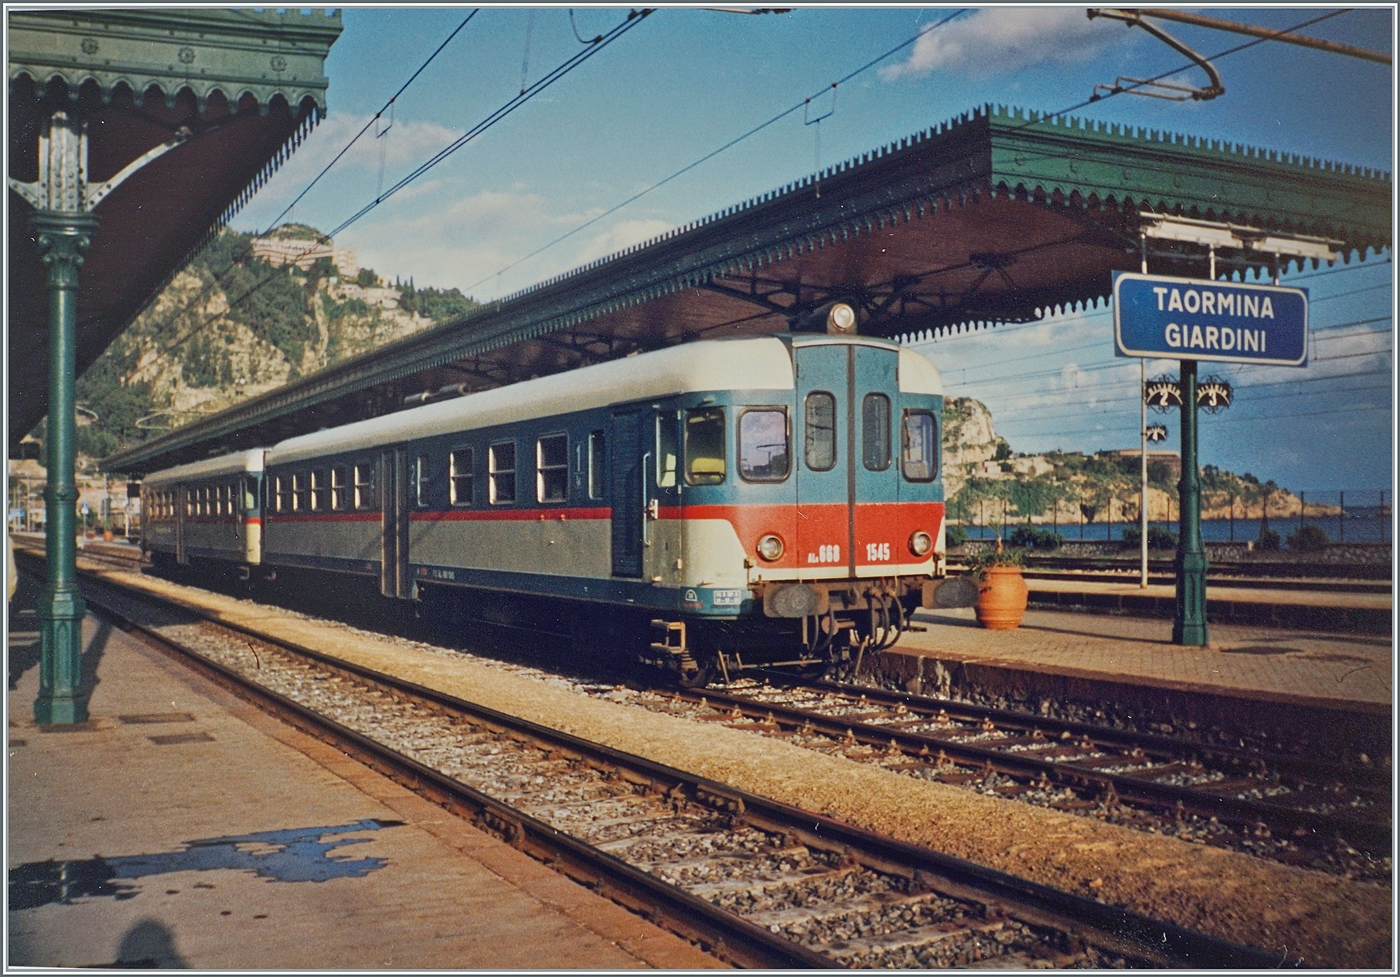 Erneut viele Kilometer weiter sdlich entstand dieses Bild: In Taormina Giardini wartet der FS Aln 668 1545 und ein weiterer auf die Abfahrt nach Randazzo. 

Analogbild vom November 1991